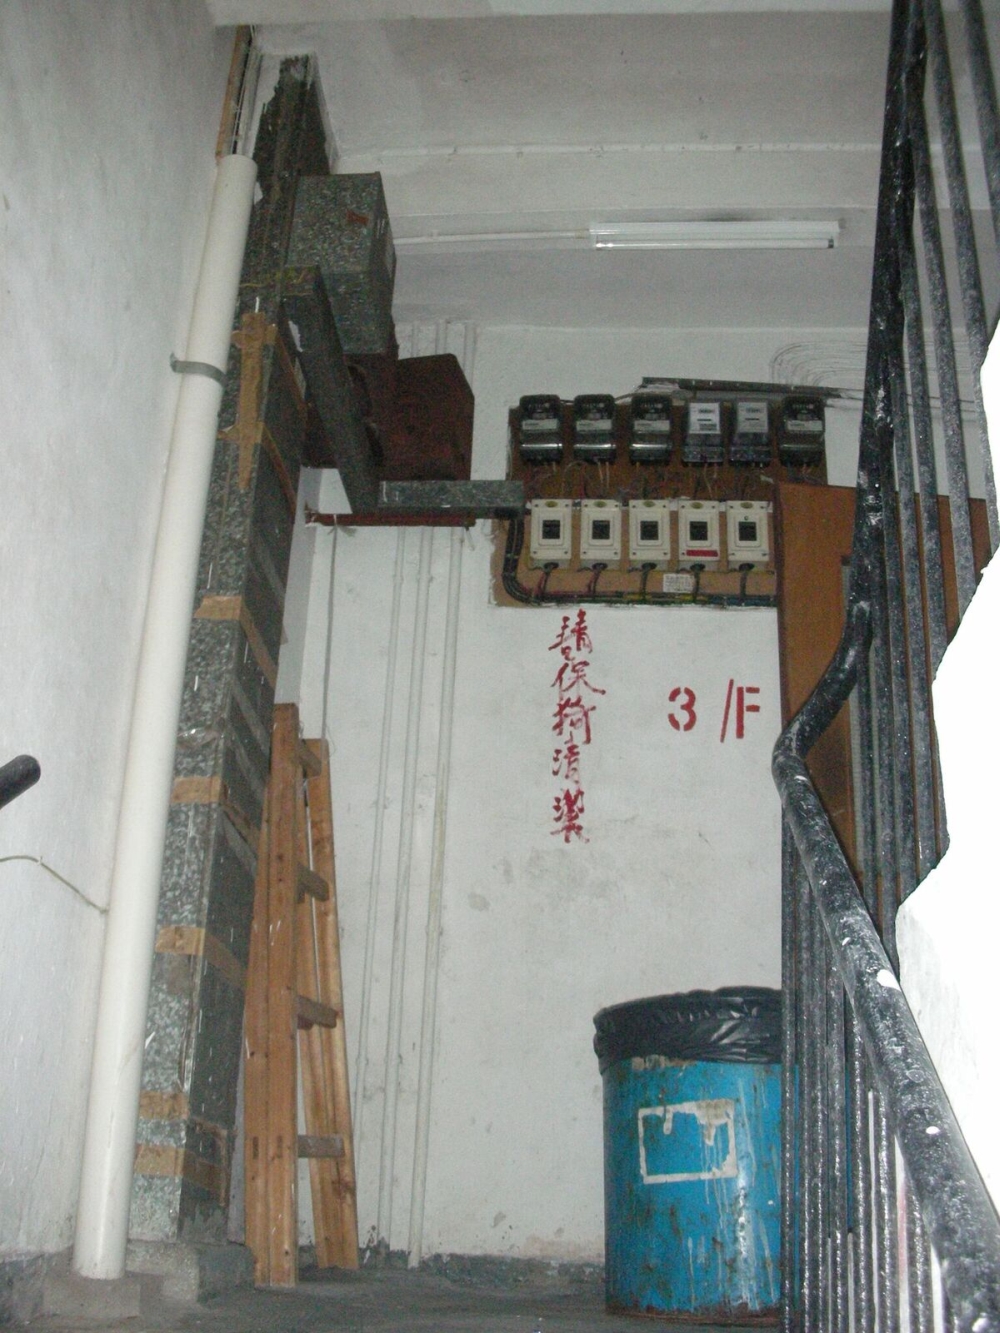 大Fire resisting boards were added to enclose the electricity meter boxes of On Hong Building in Tsuen Wan under OBB.